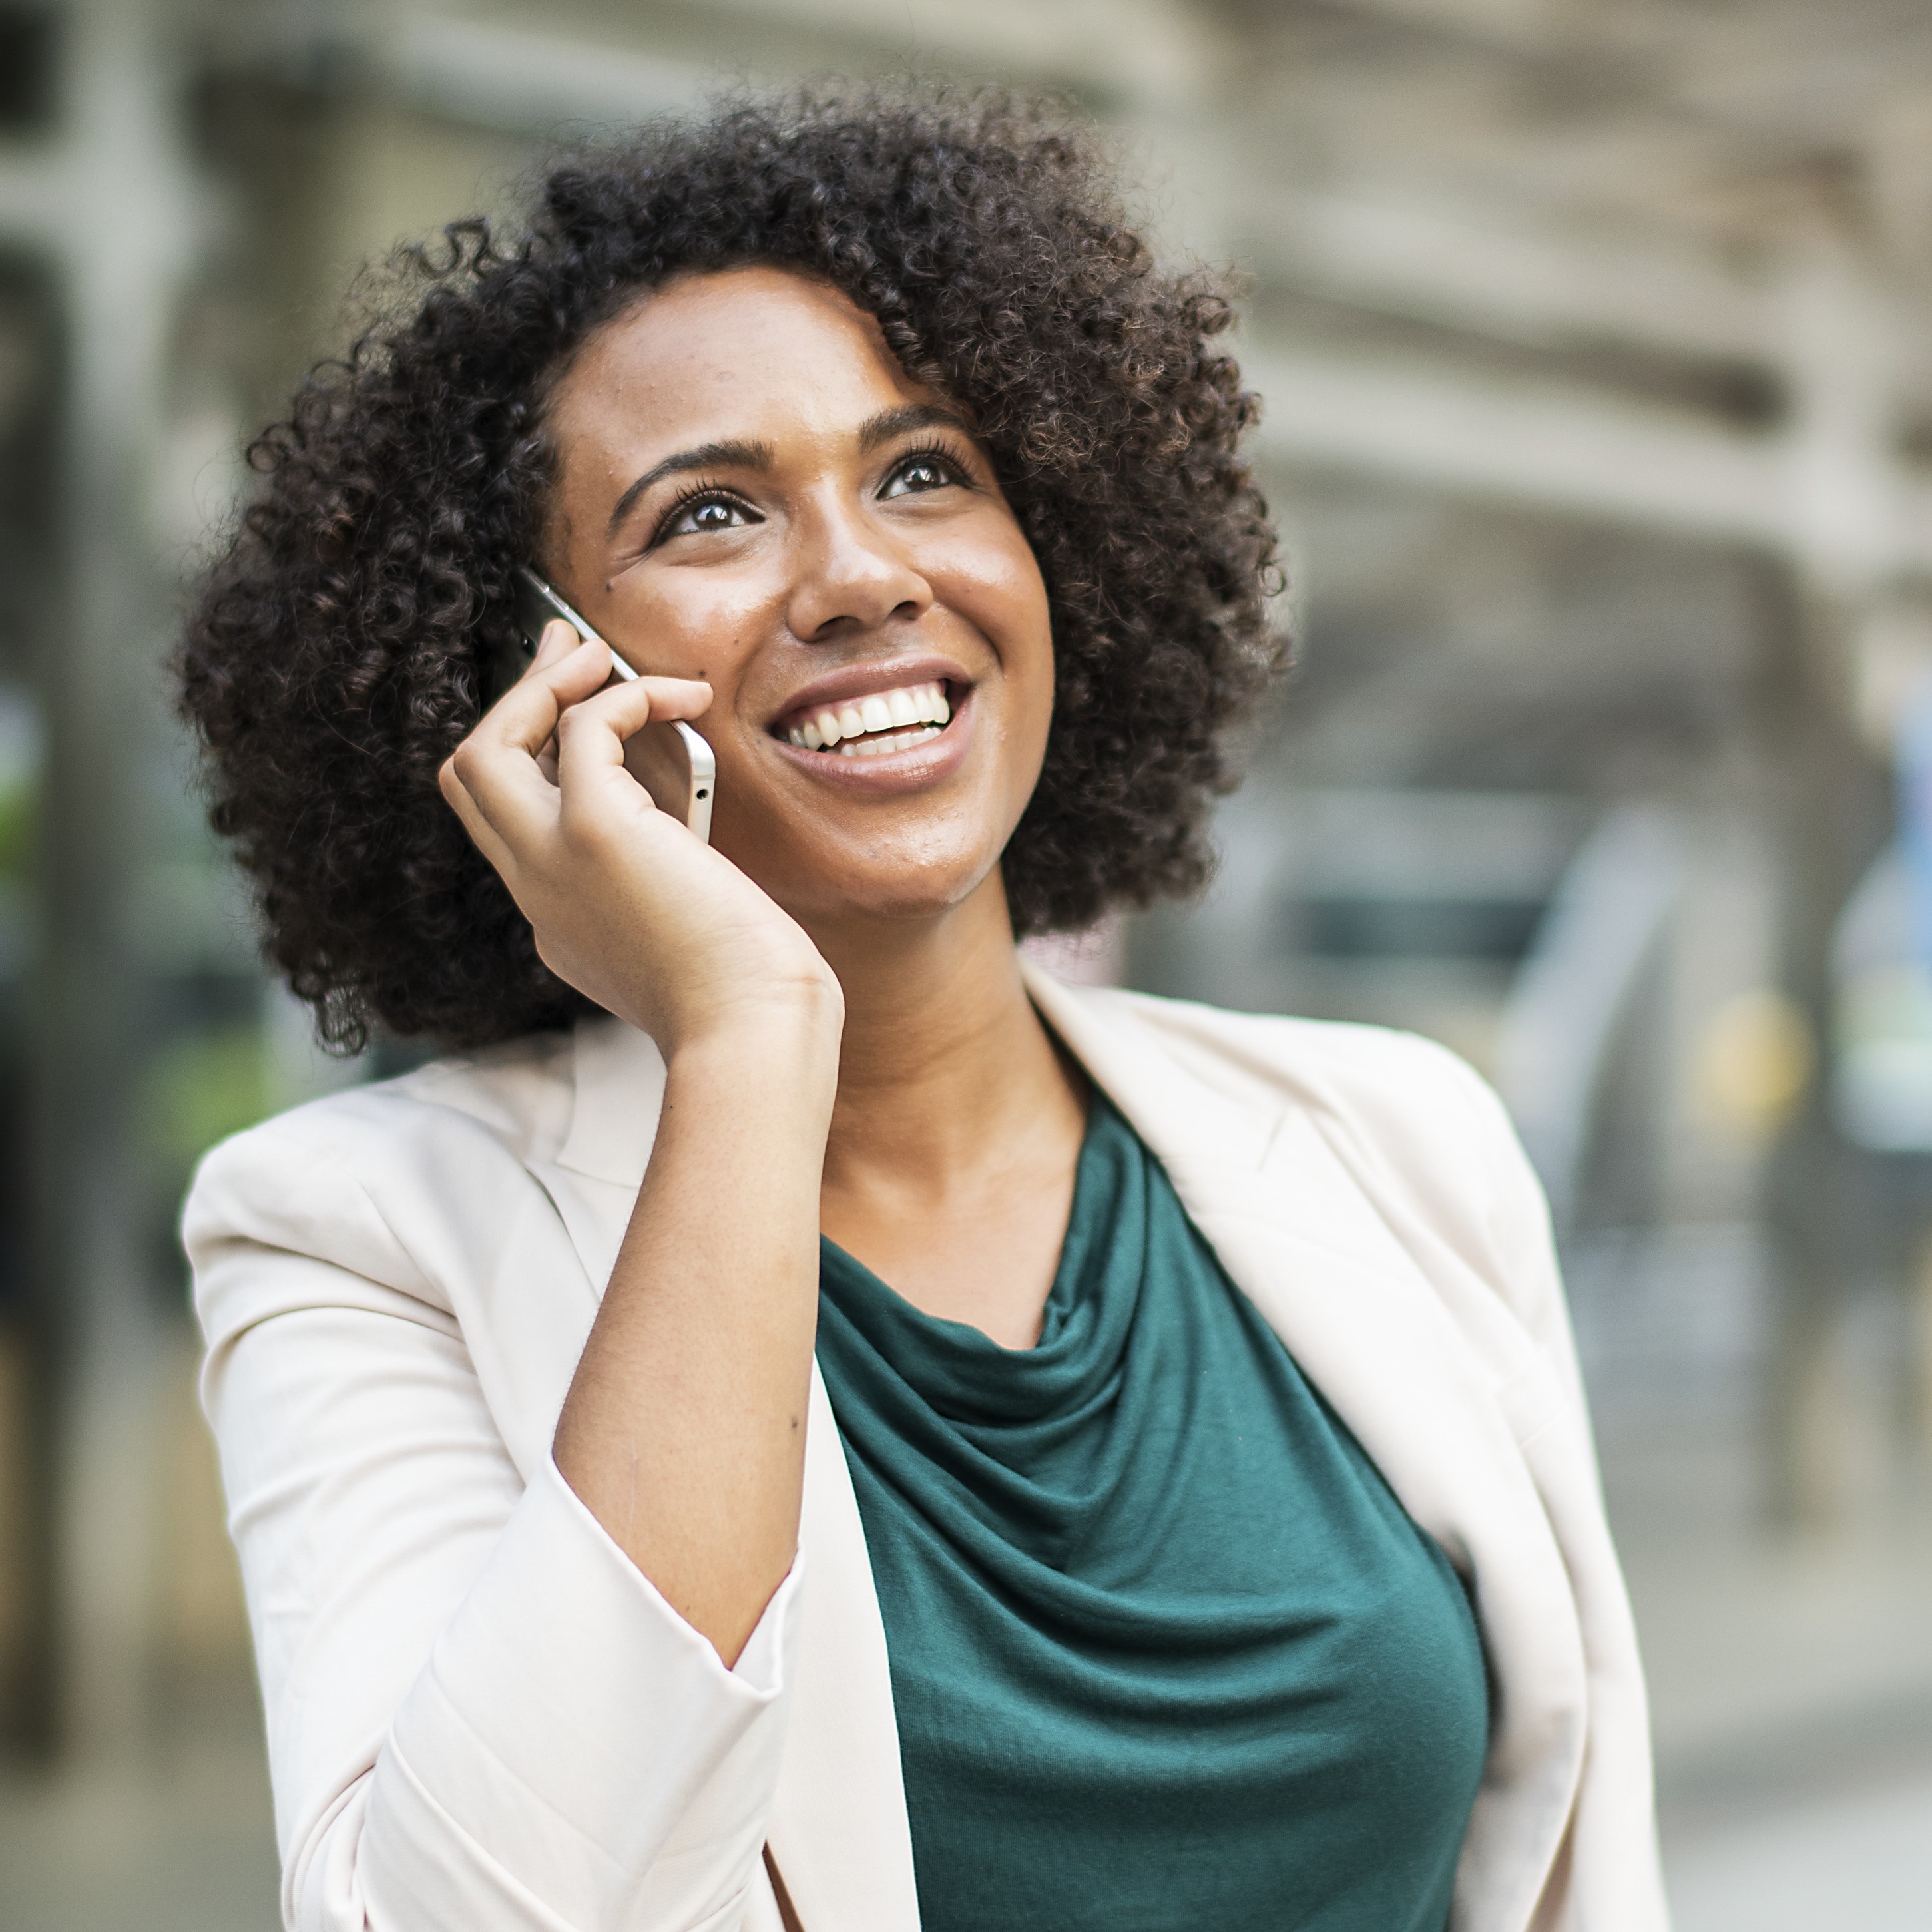 Phone survey invites input on customer satisfaction